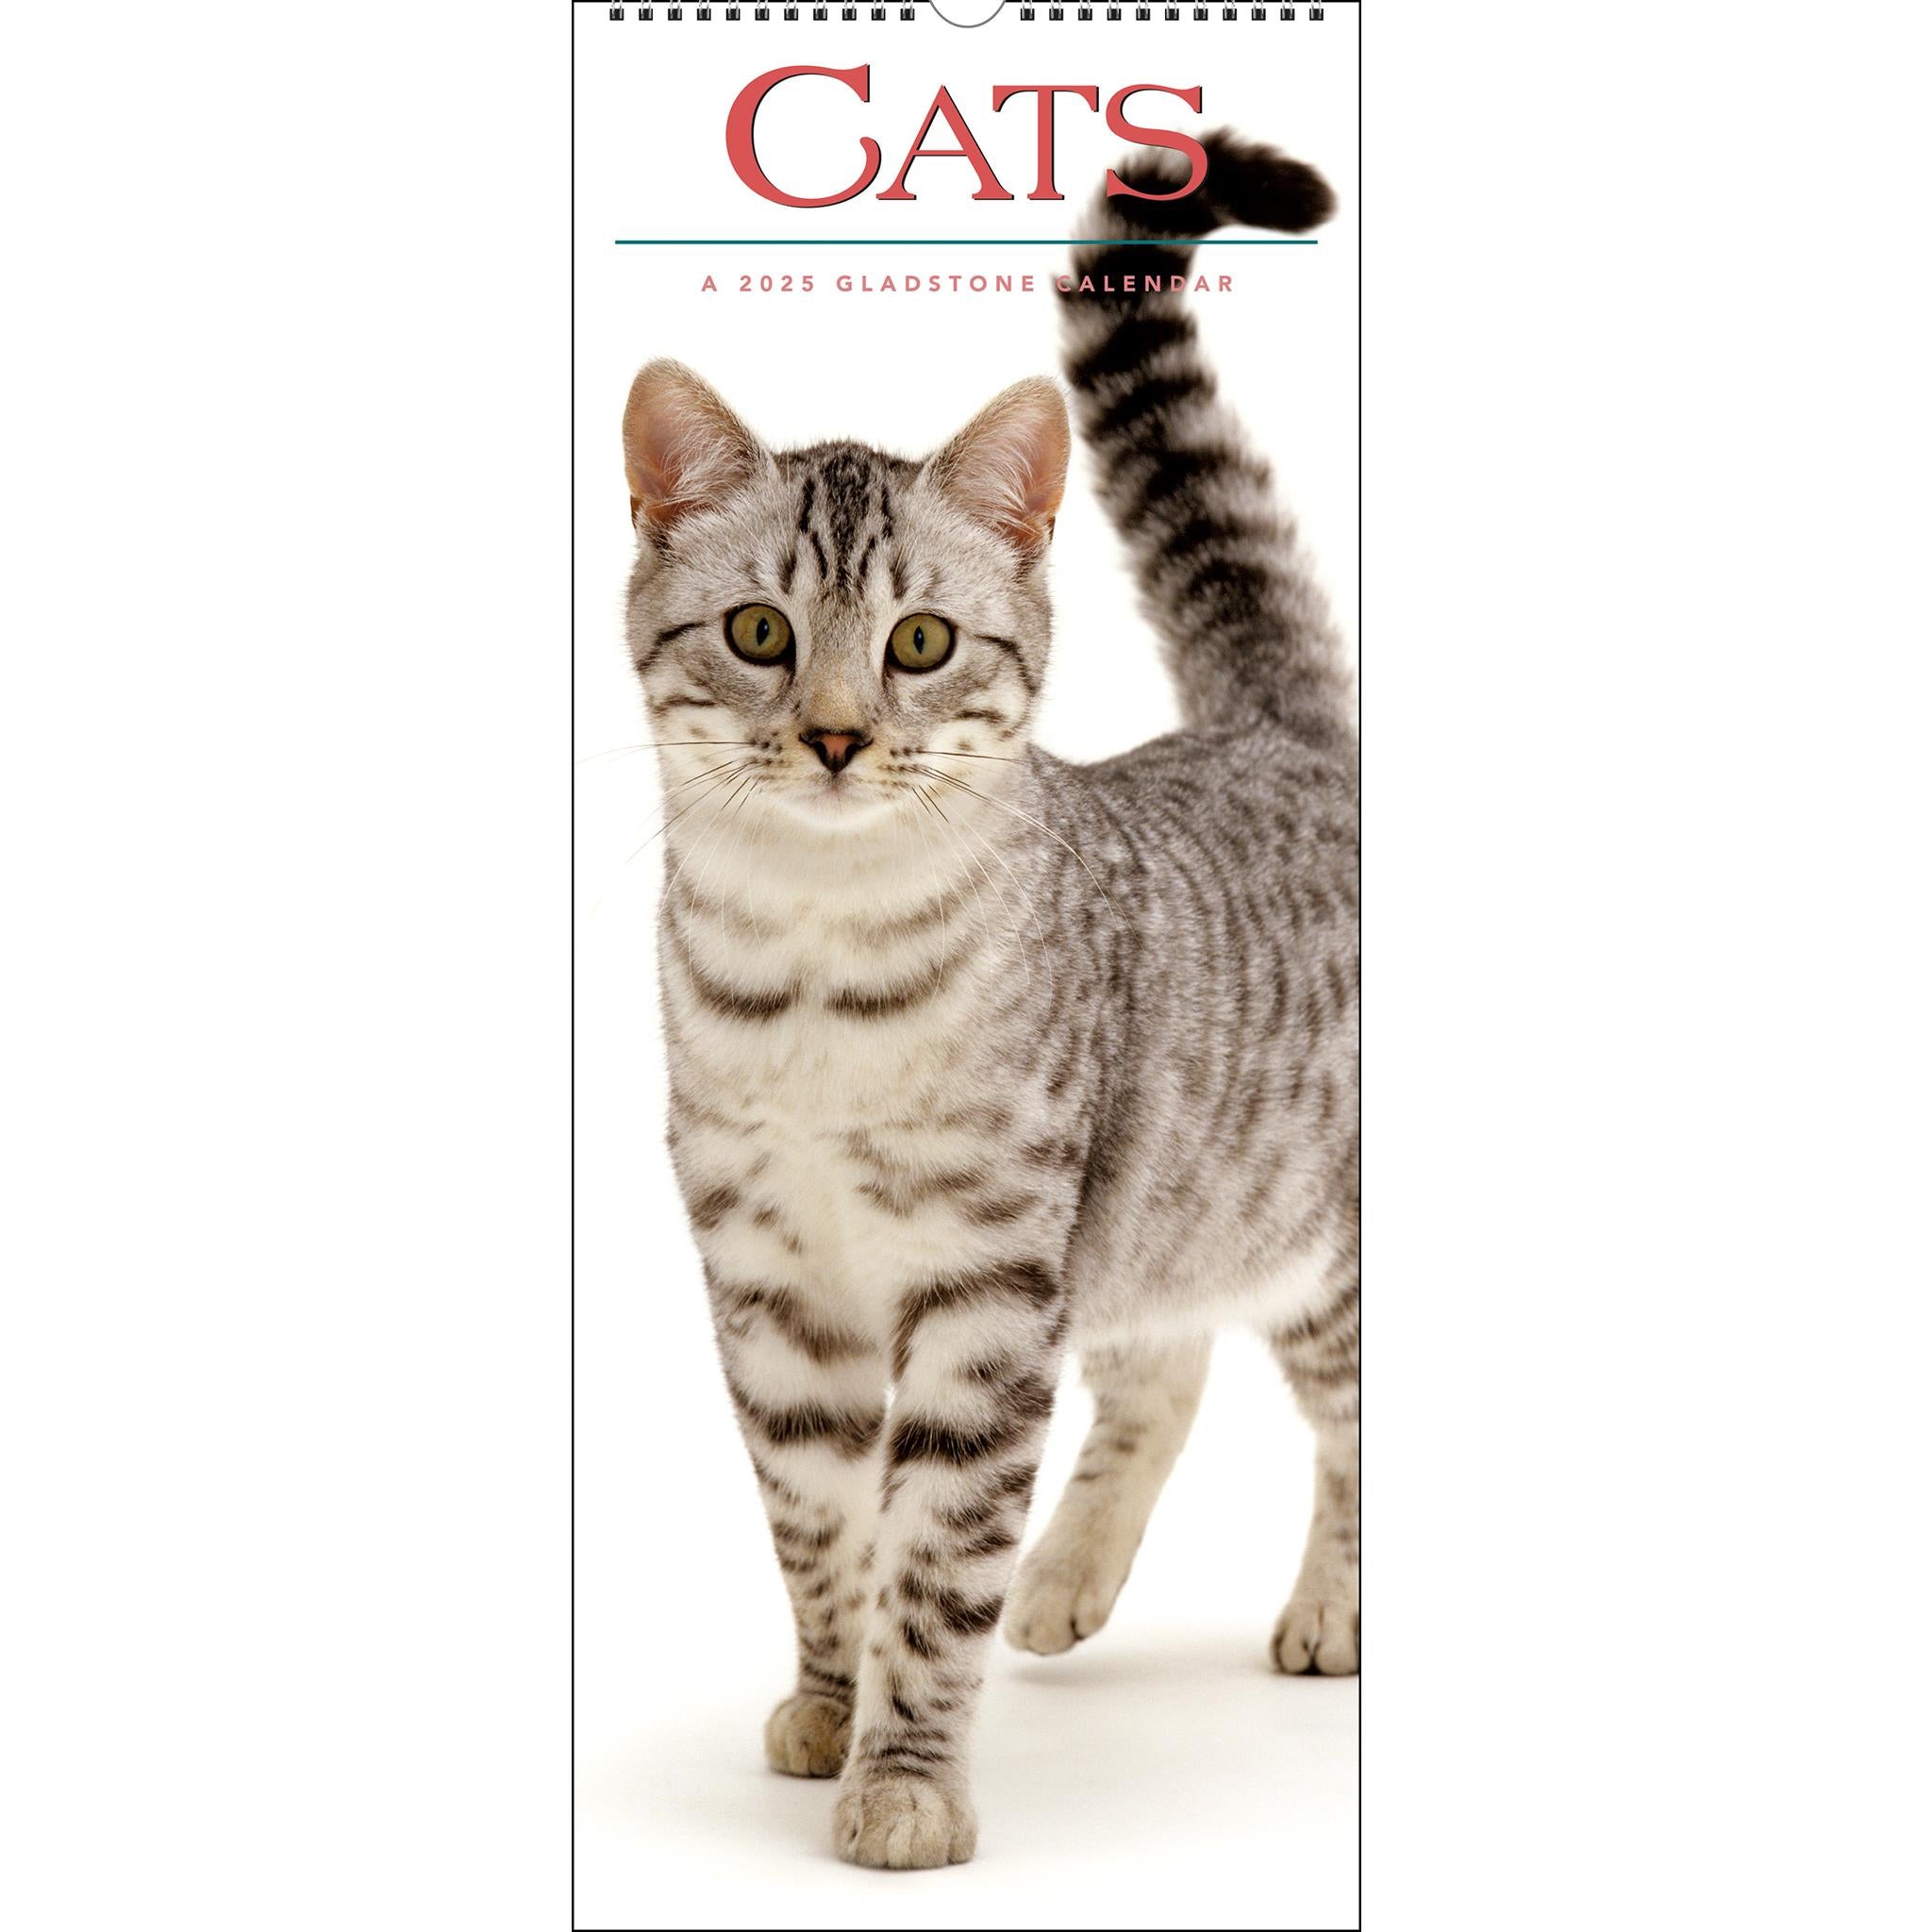 Cats Poster 2025 Calendar